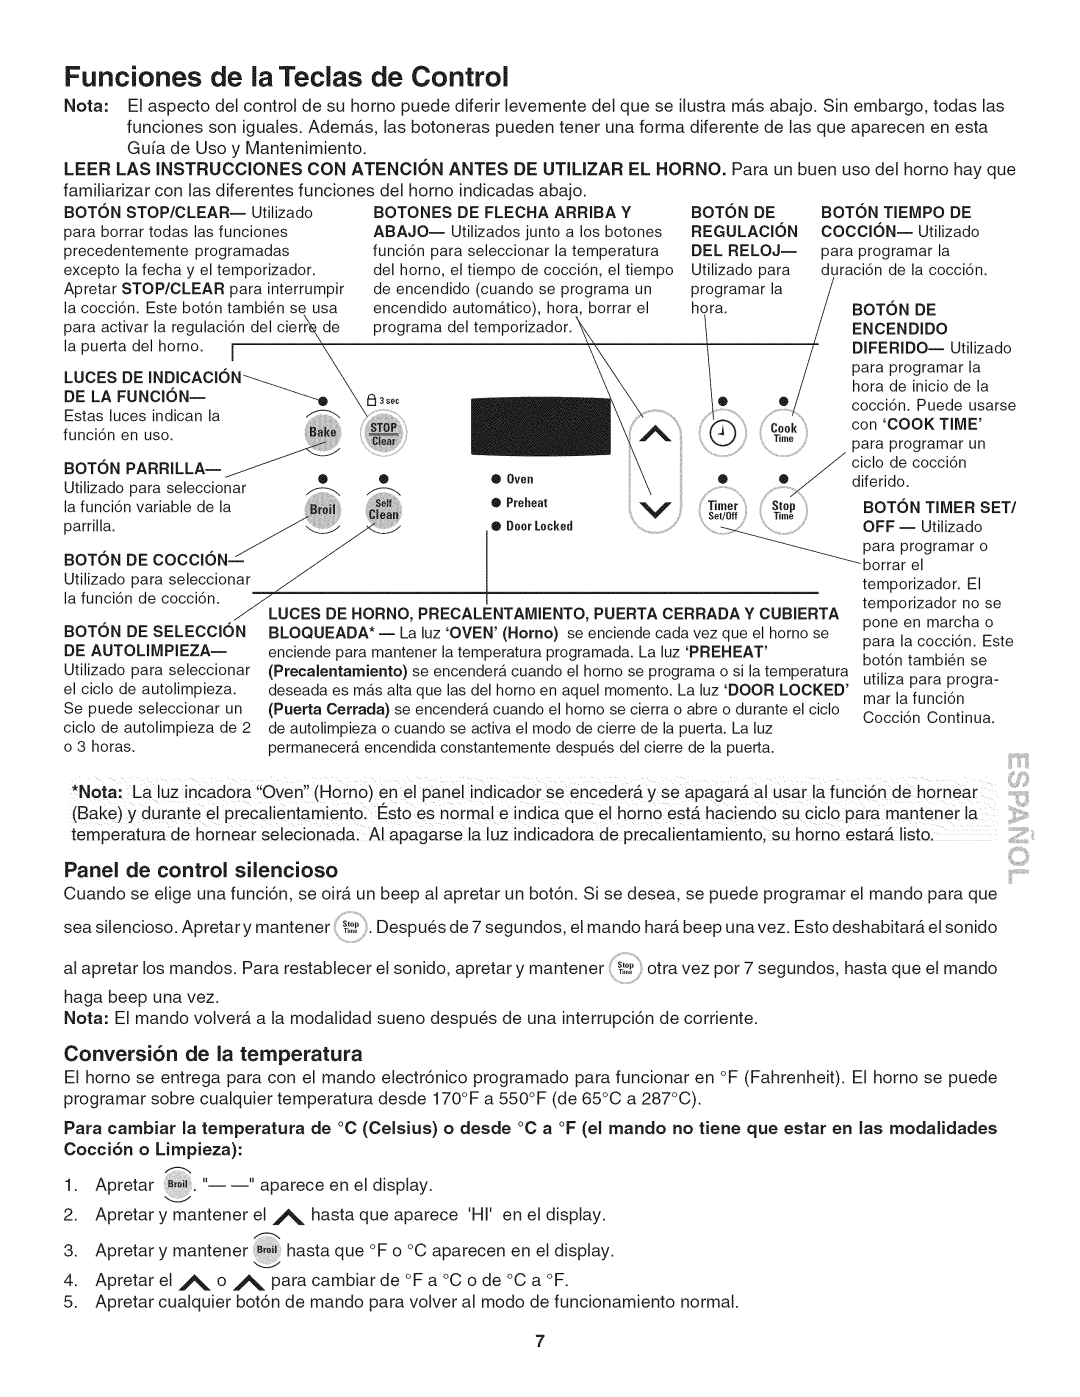 Kenmore 790. 4045 manual Funciones de la Teclas de Control, Panel de control silencioso, Conversi6n de la temperatura 